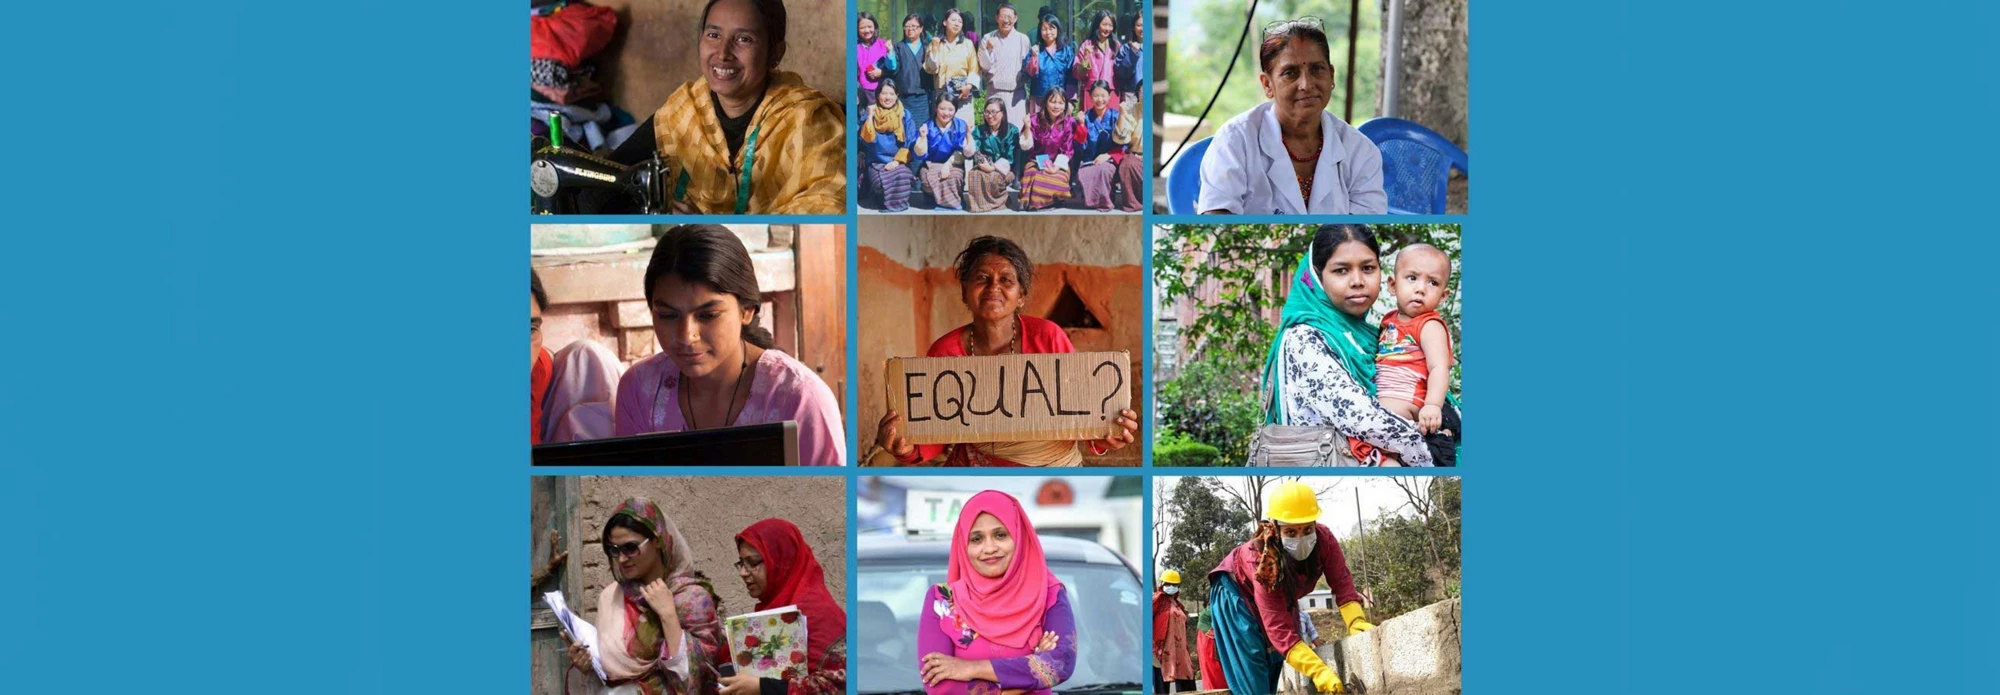 在整个南亚地区， 成百上千万励志、独立的女性很好地示范了弥合性别差距为何对减贫和促进共享繁荣至关重要。正因为如此，世界银行集团旗下面向最贫困国家的基金国际开发协会（IDA）高度聚焦于向女性开放更多经济机会。图片: 世界银行